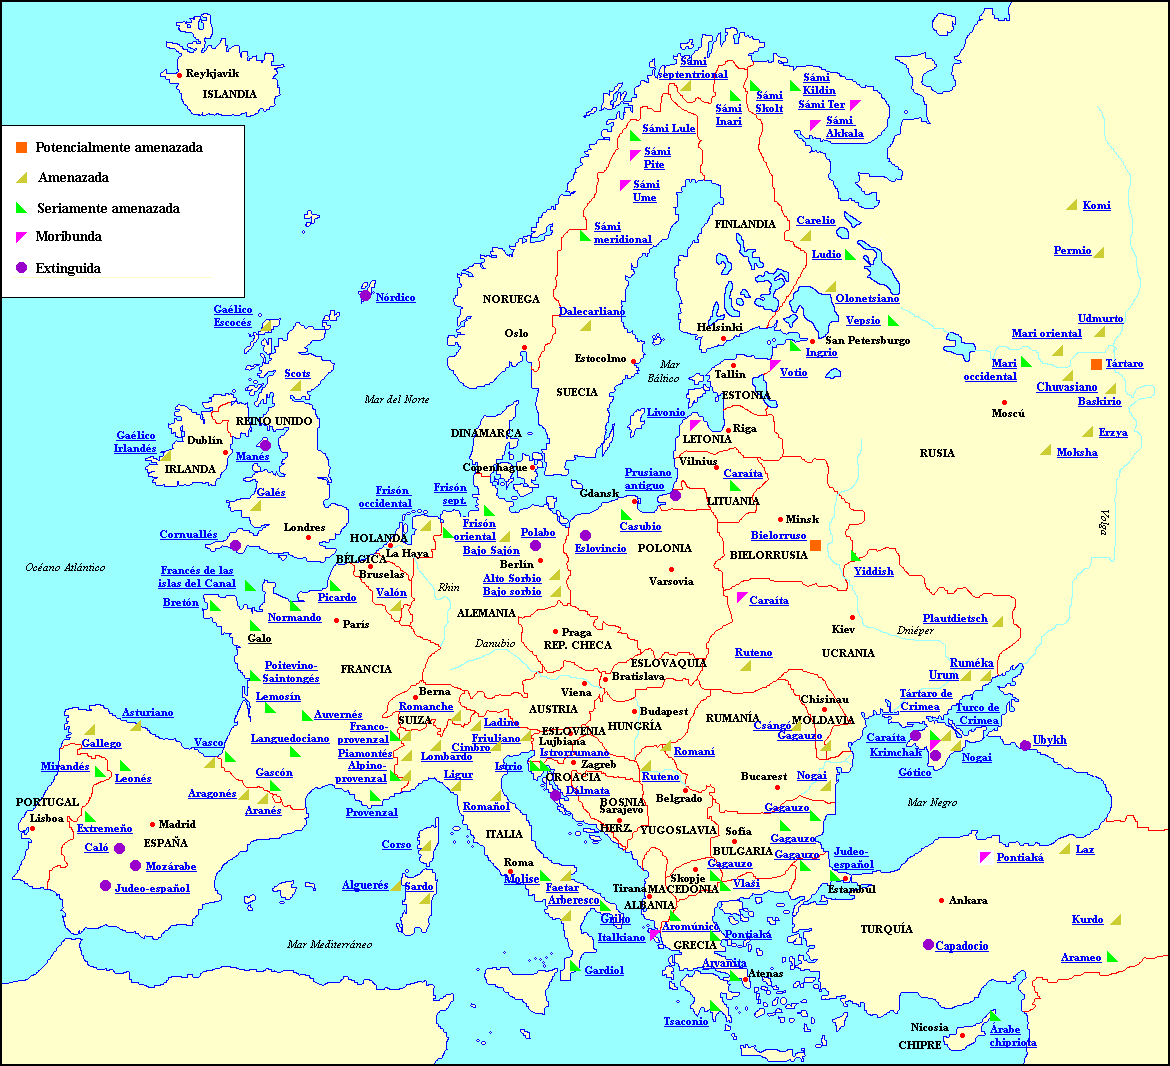 Tours Por Europa Mapa